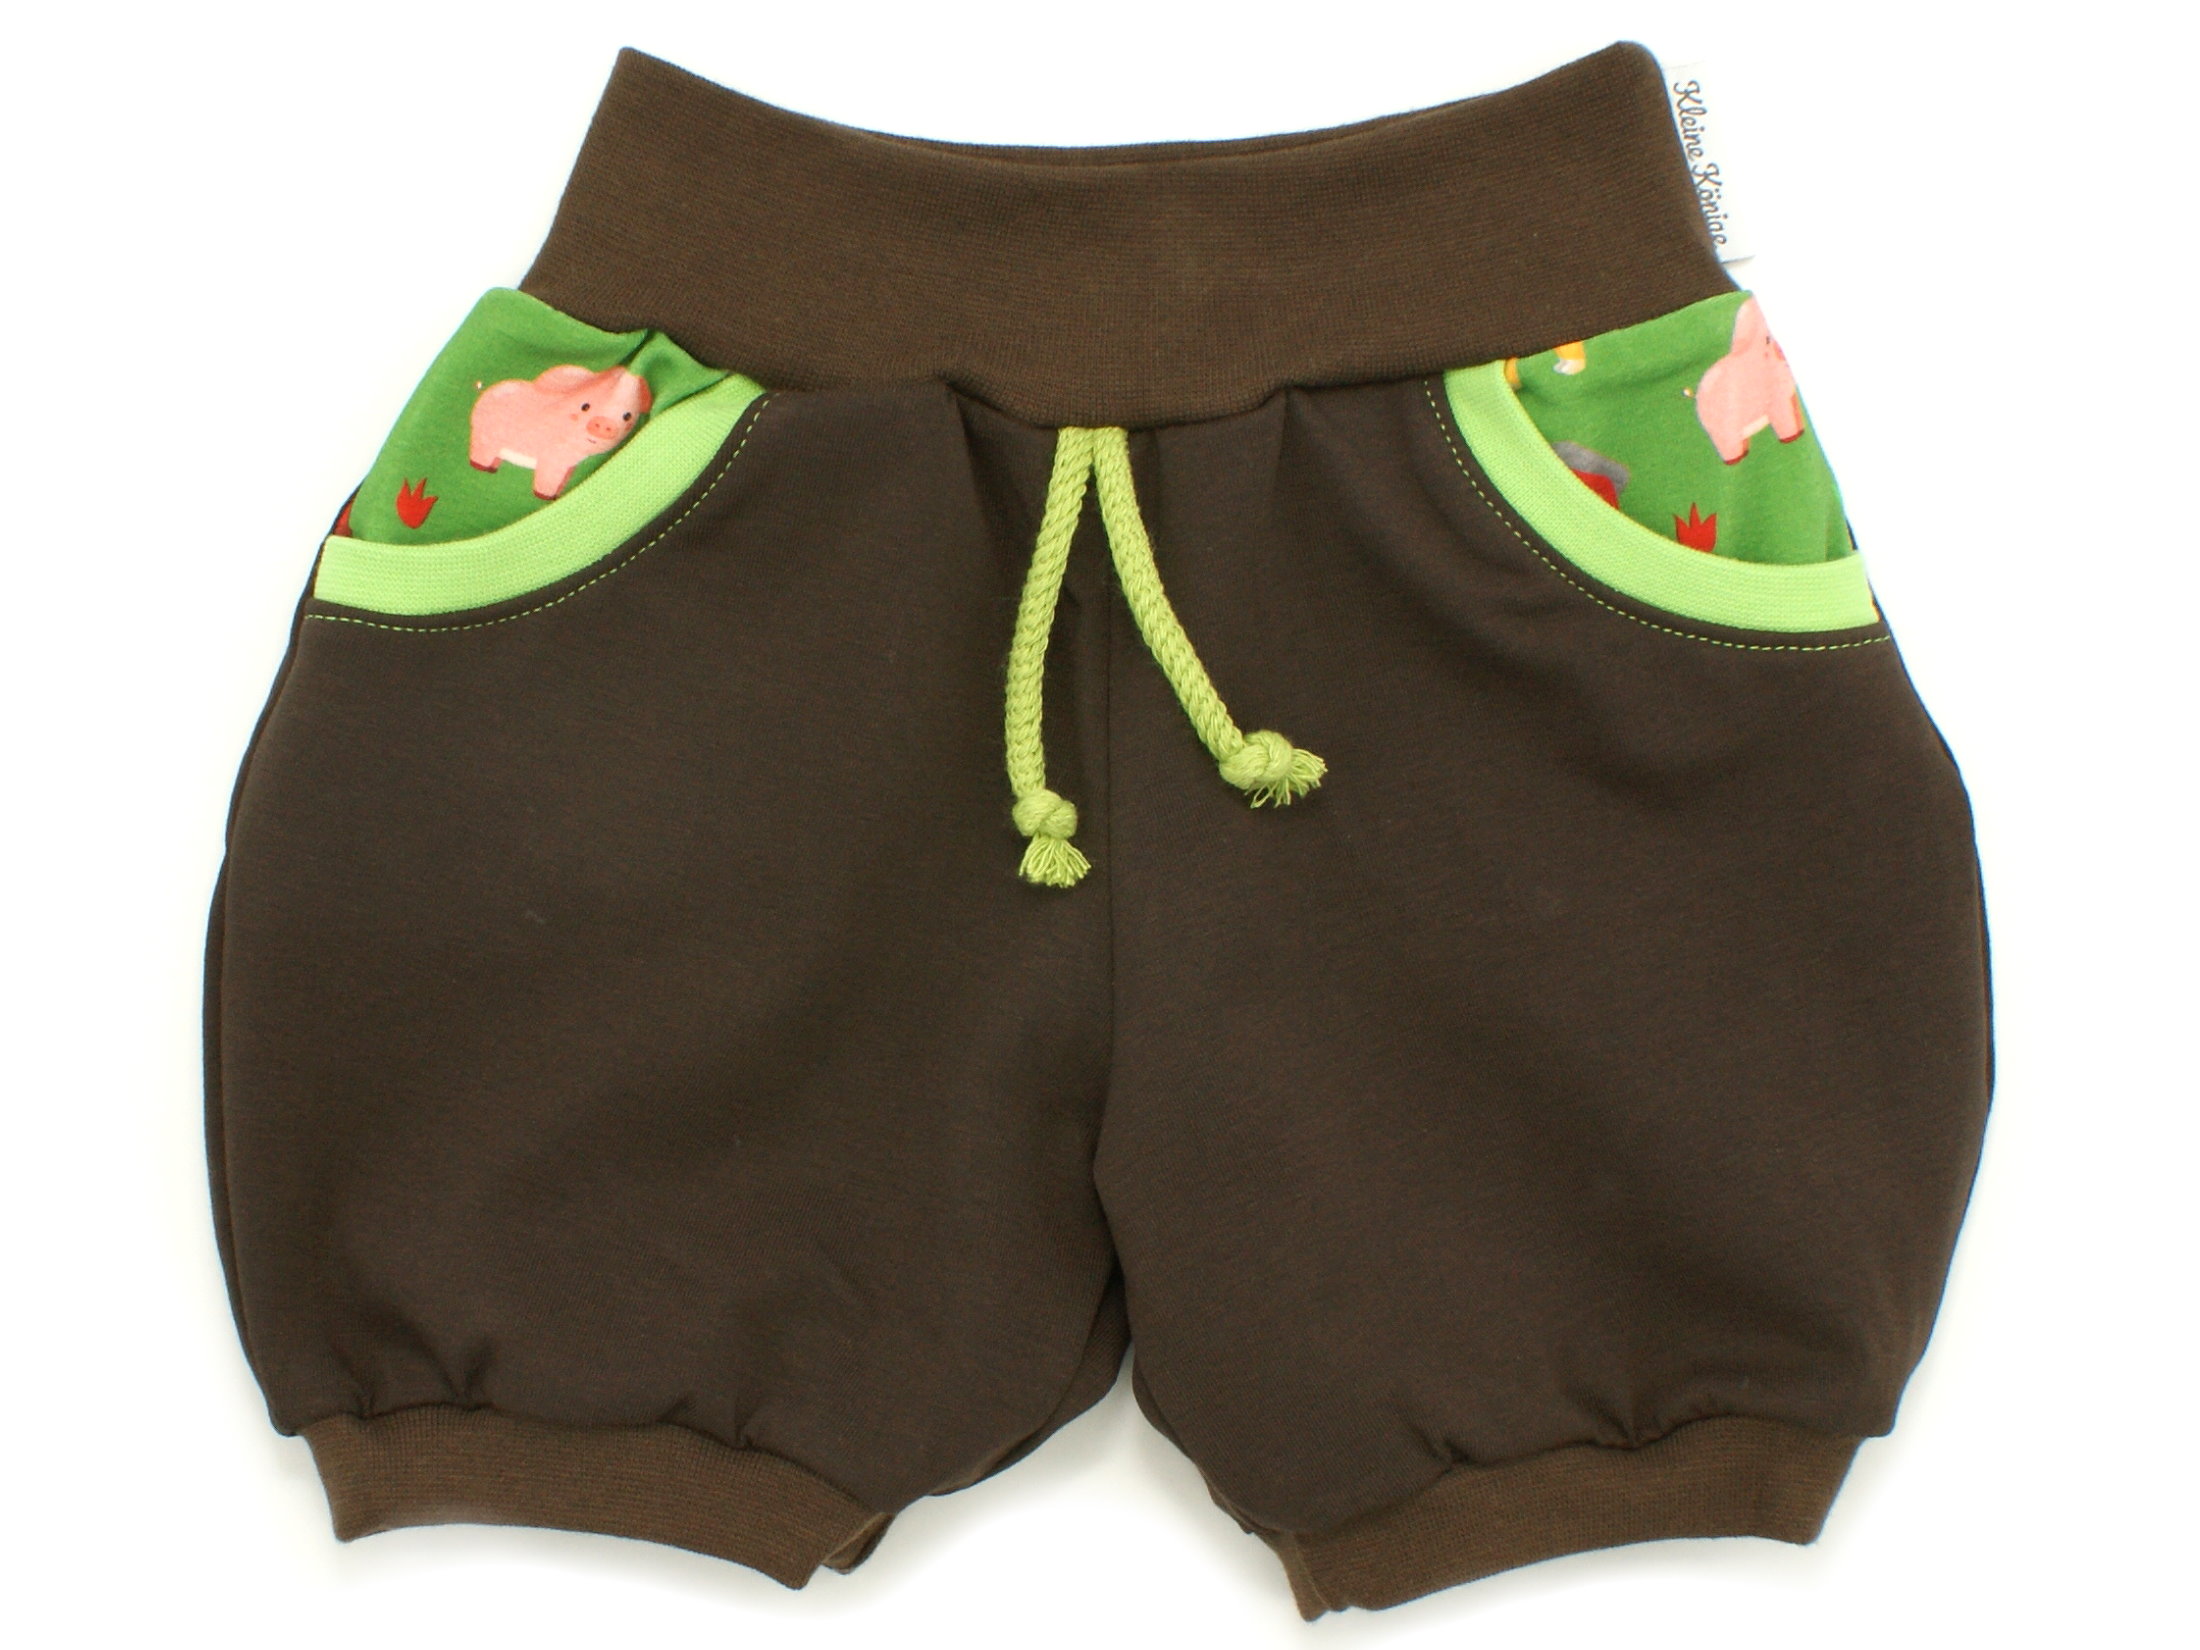 Kinder Sommer Shorts mit Taschen "Happy Farm" braun grün